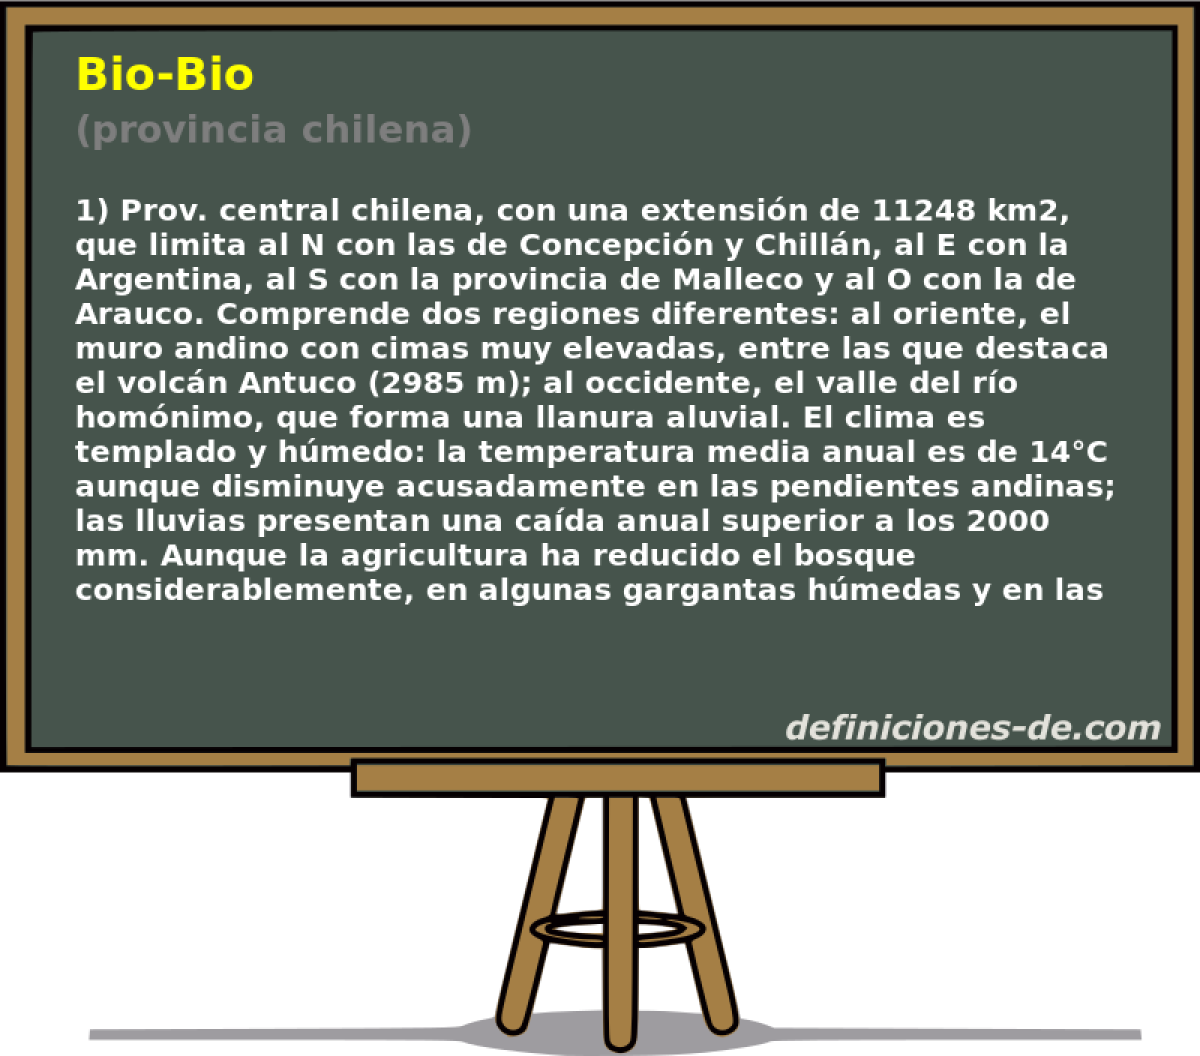 Bio-Bio (provincia chilena)